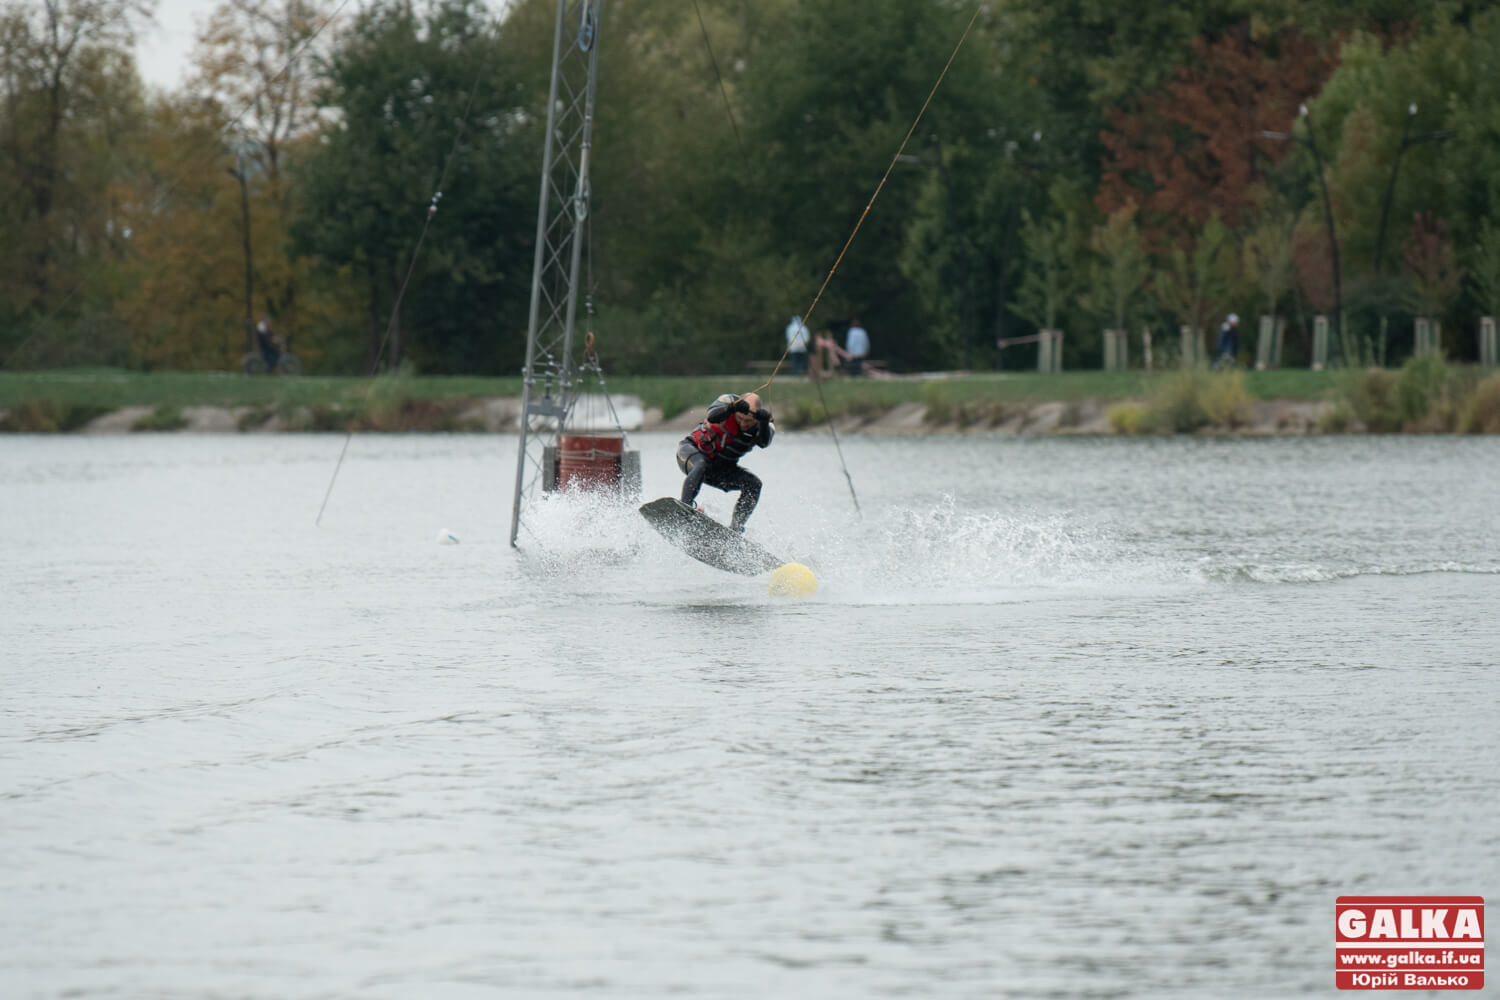 Мокро, спортивно, екстремально: на міському озері запрацював новий атракціон (ФОТО)